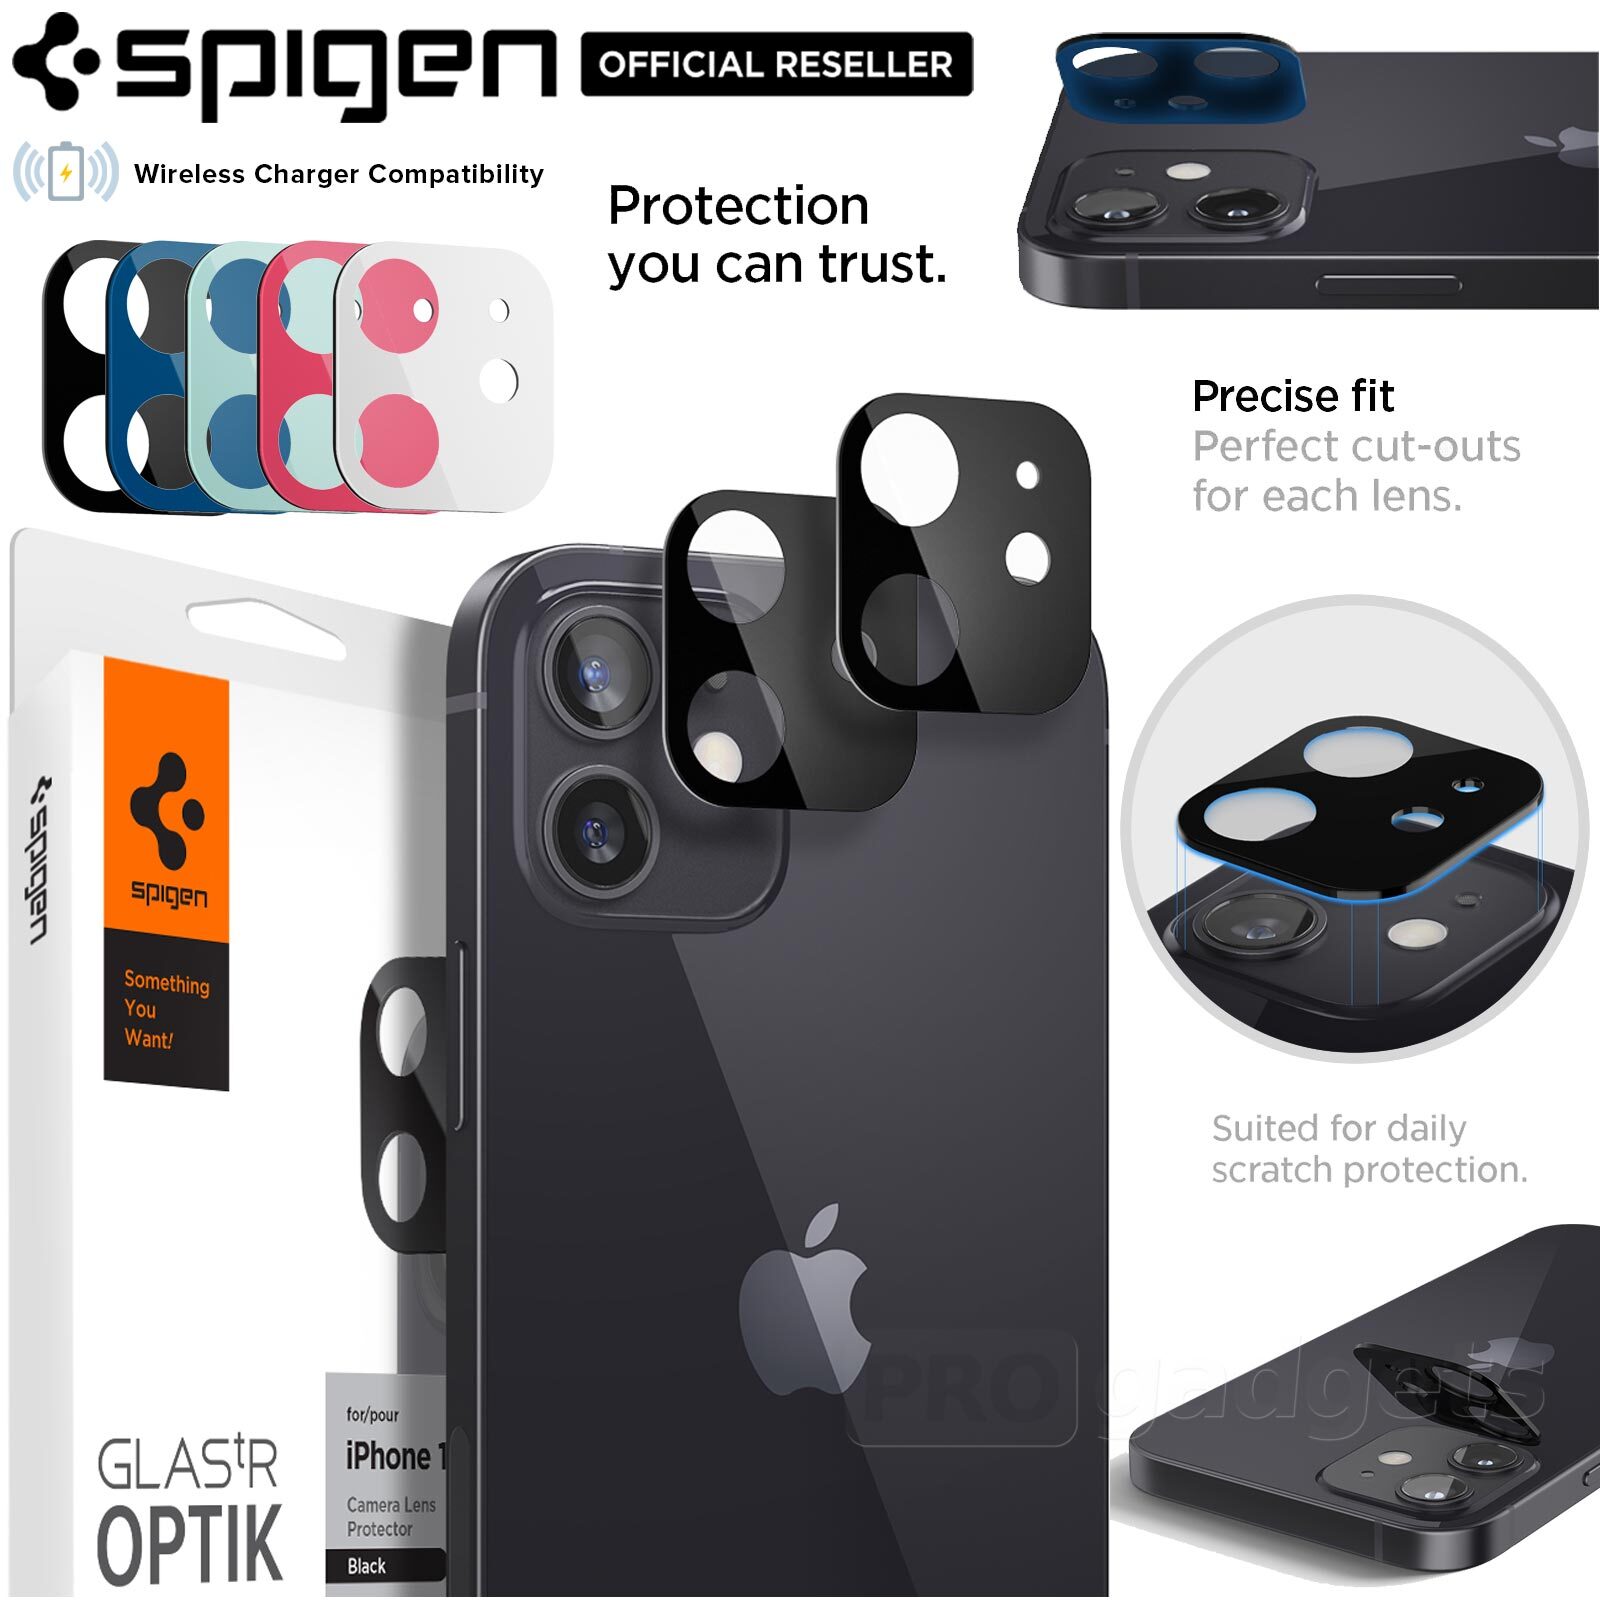 Glas.tR Optik - Green Spigen Camera Lens Screen Protector 2 Pack 2020 designed for iPhone 12 